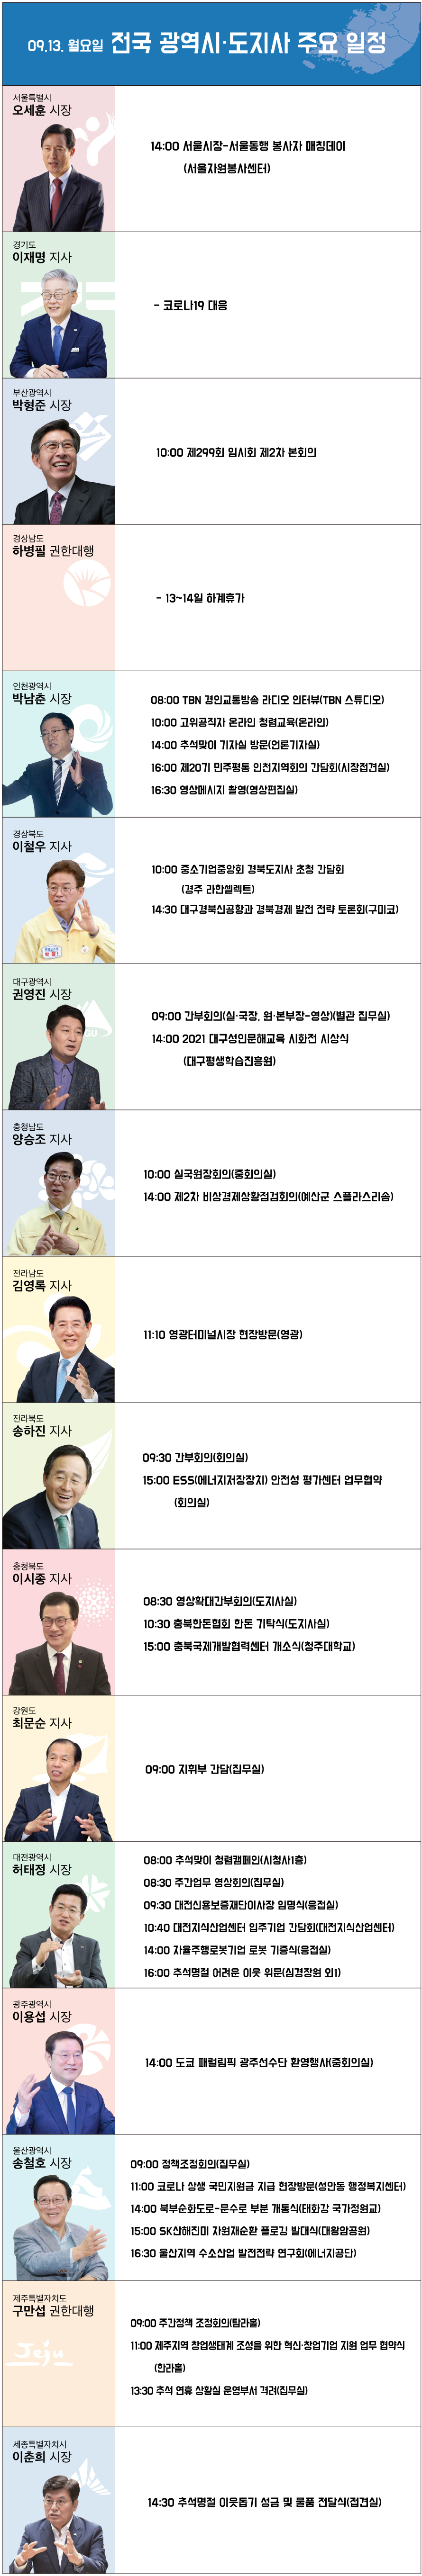 9월 10일 광역시·도지사 주요 일정 [그래픽 = 박금현 기자]